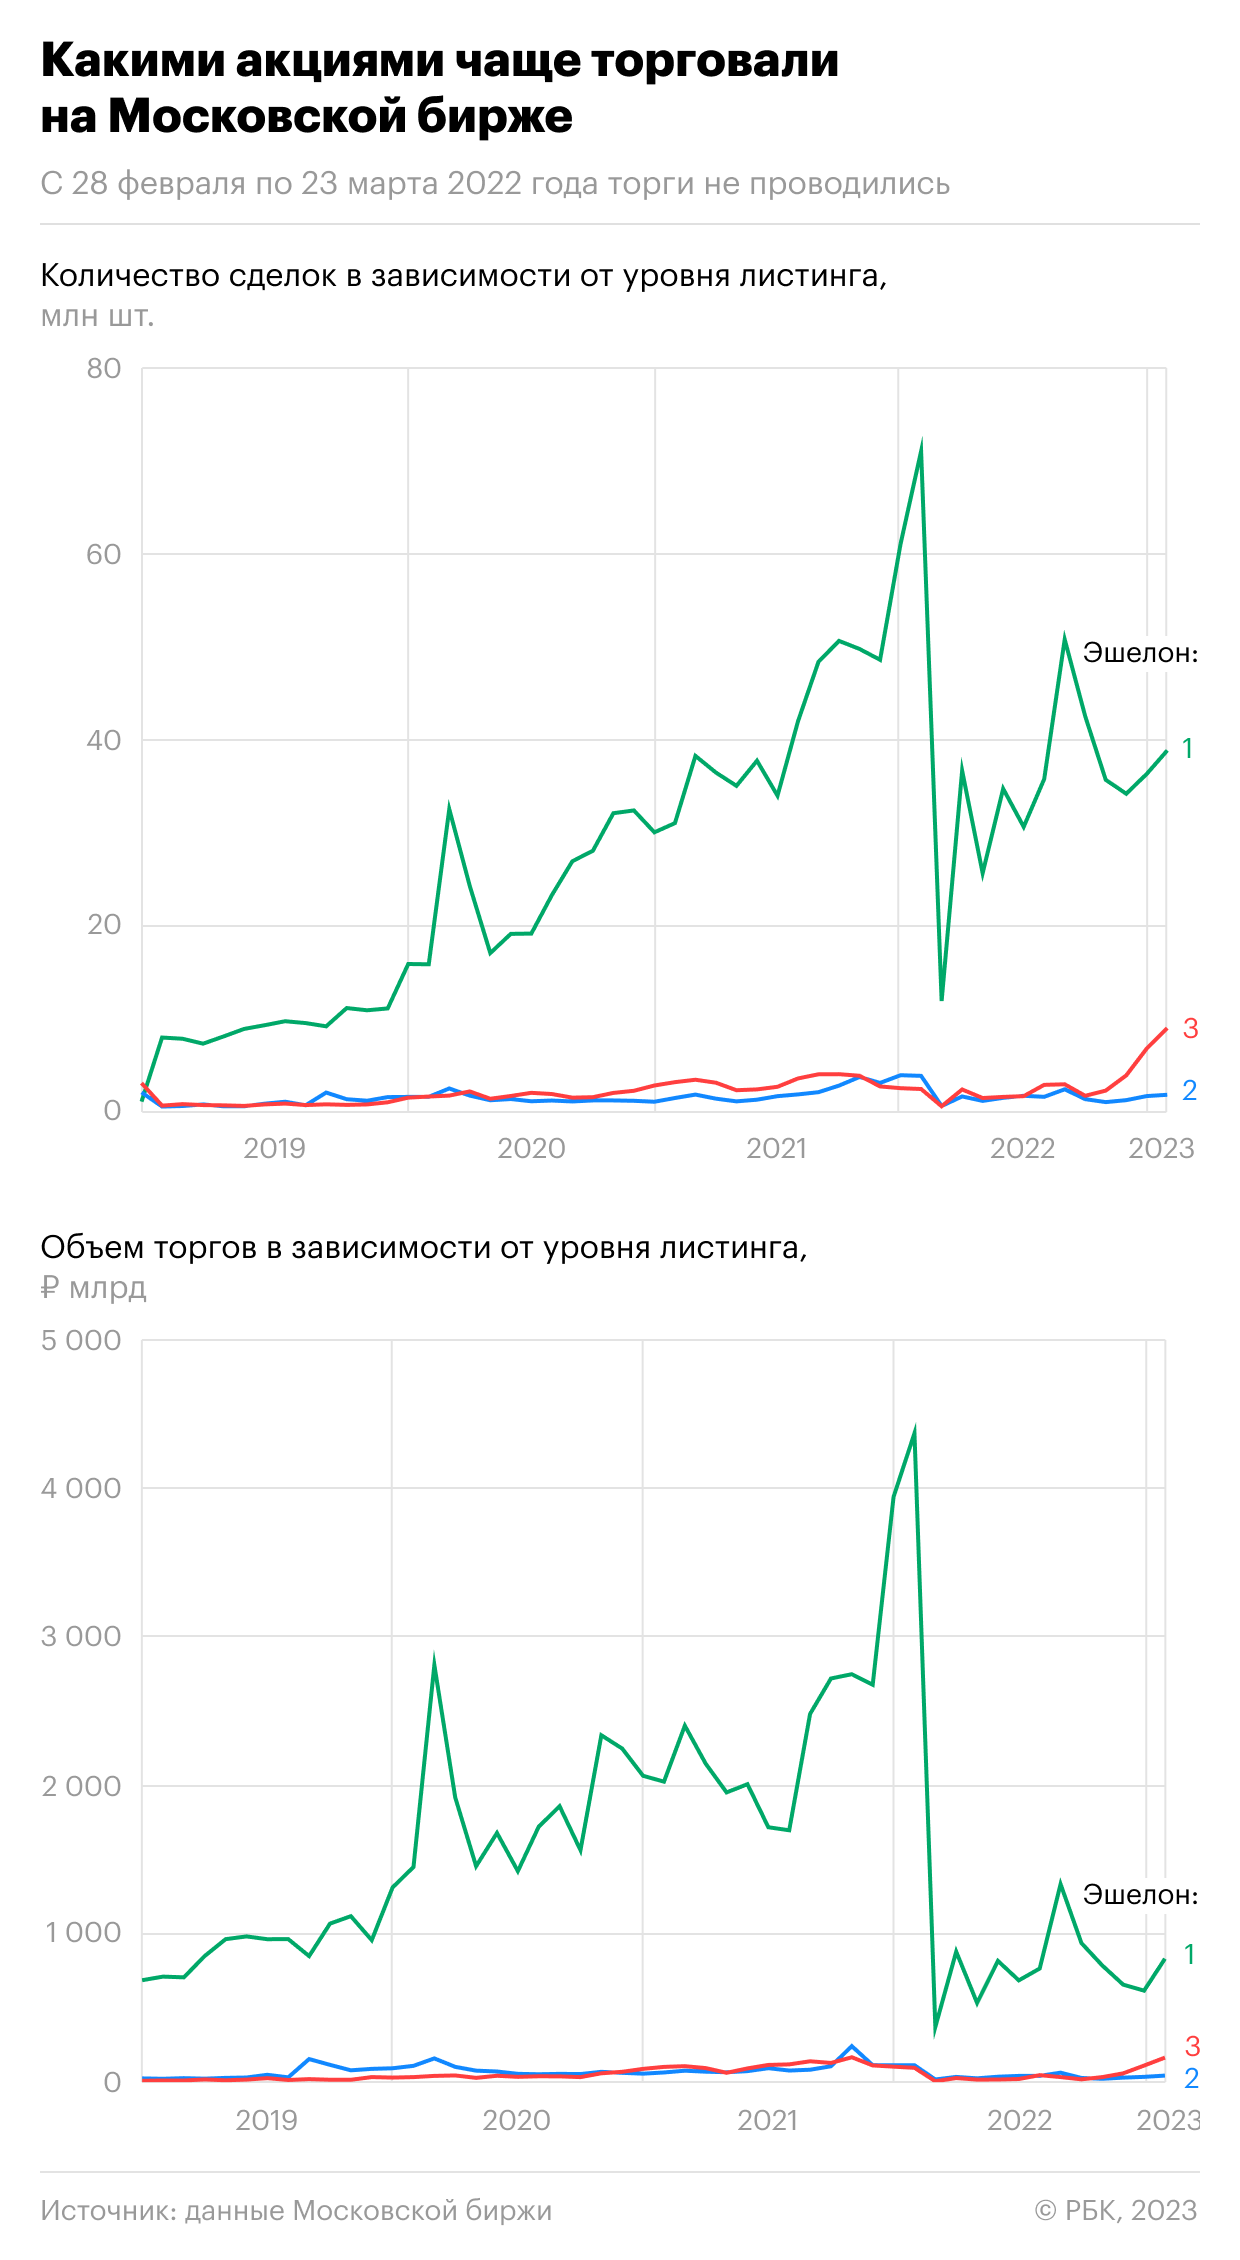 Как подскочили торги малоизвестными акциями на Мосбирже. Инфографика